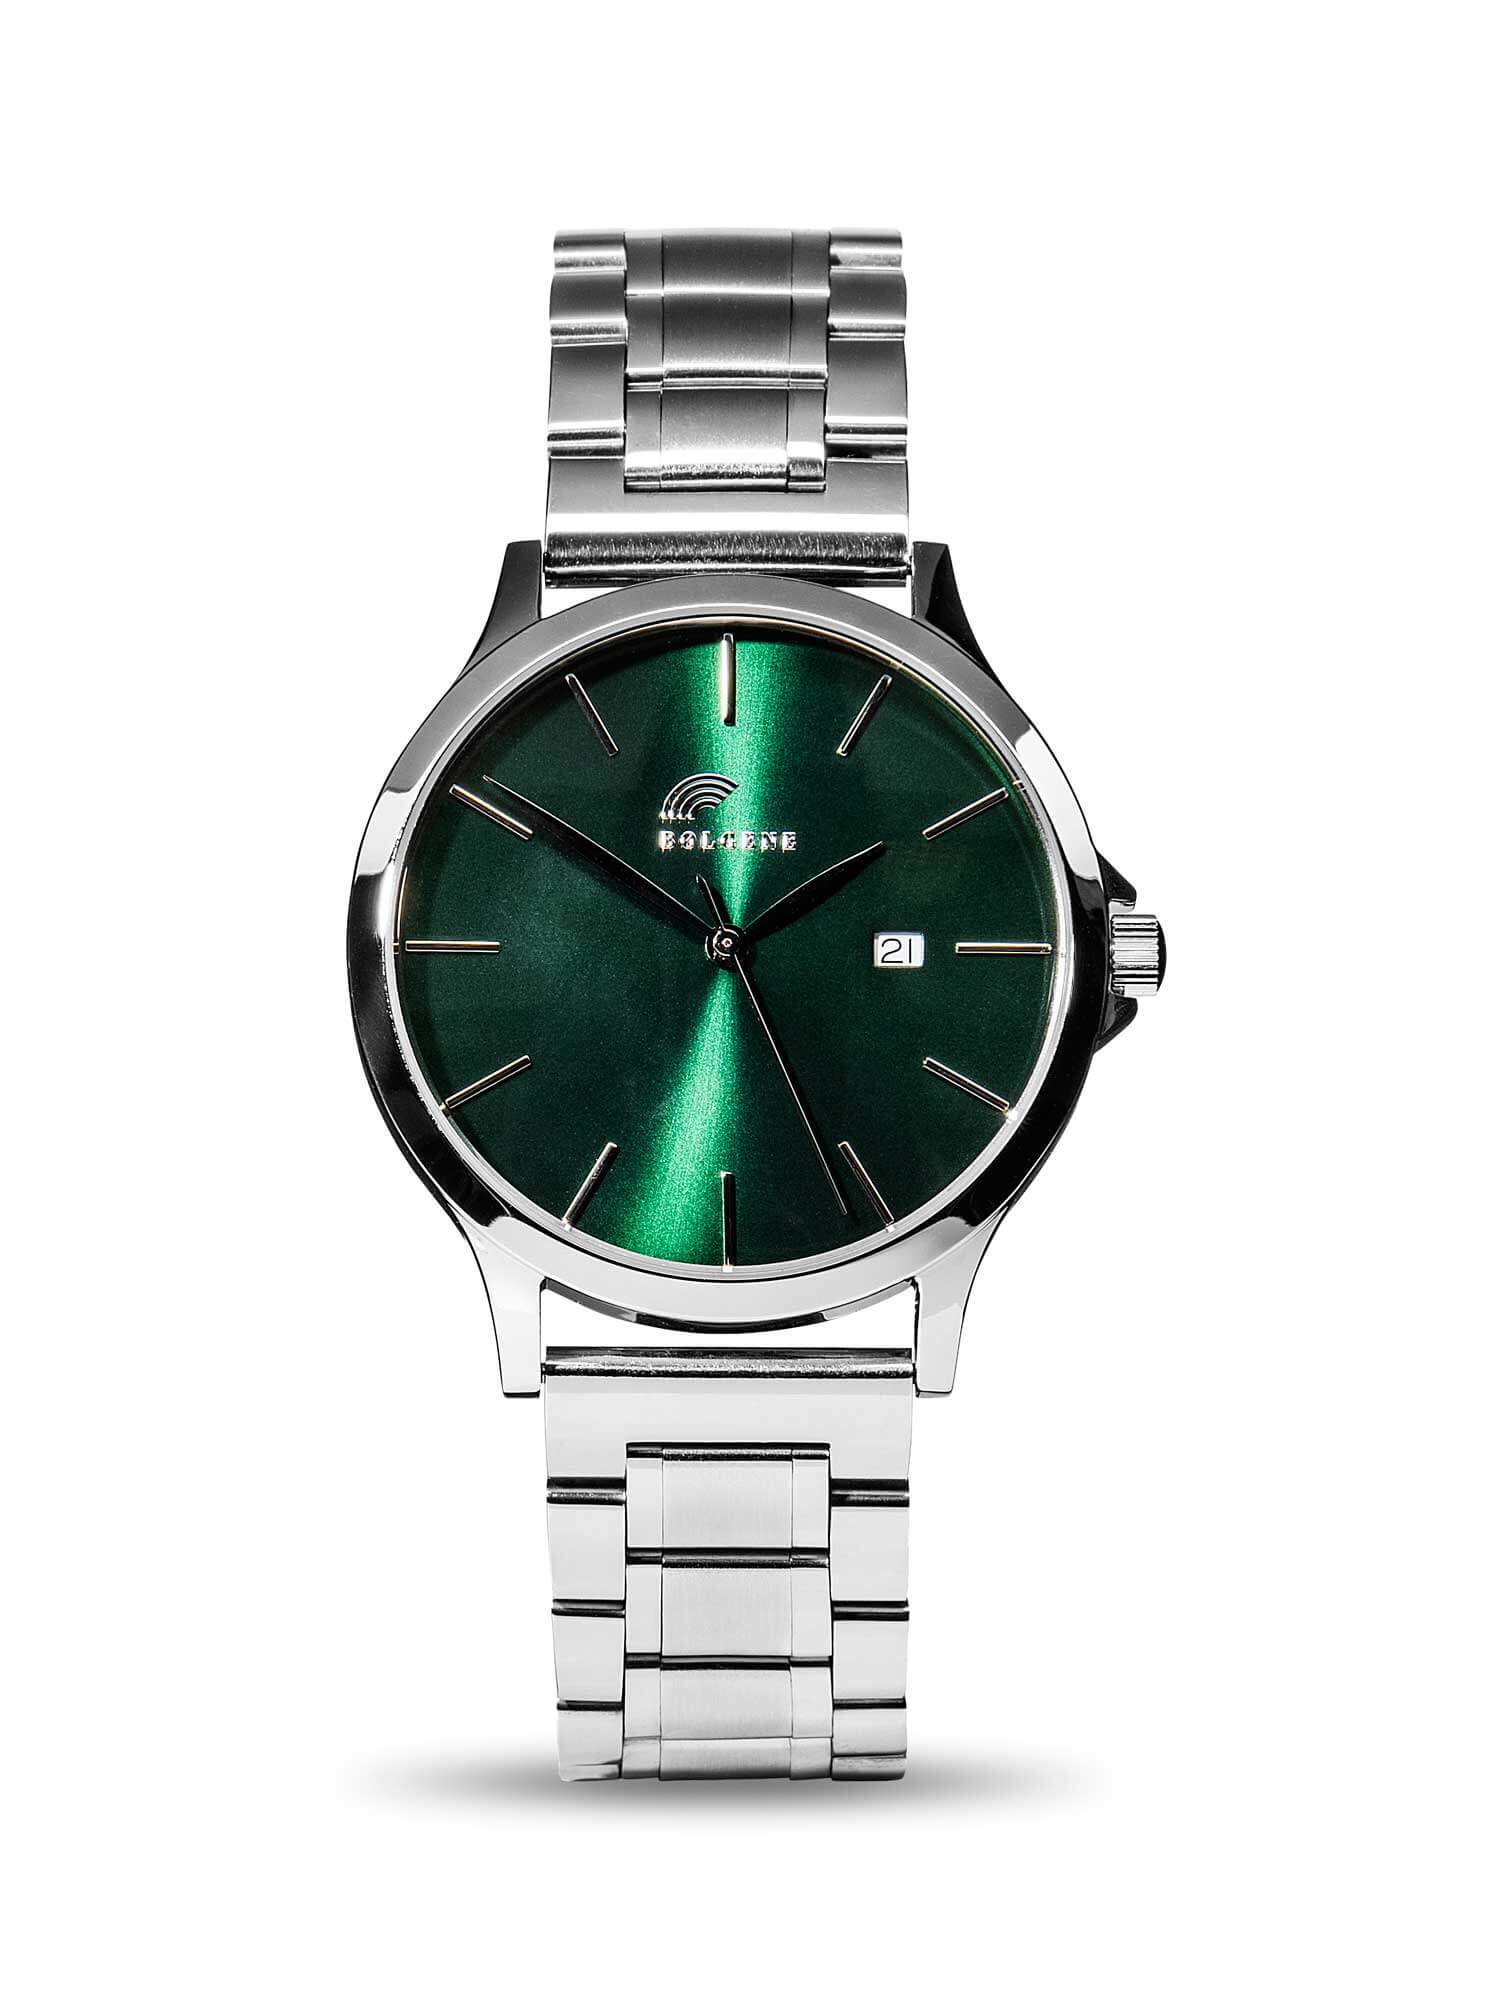 Timepiece by Bølgene Norway - Bølgene Kjeungskjaer Fyr sølvklokke med grønn skive